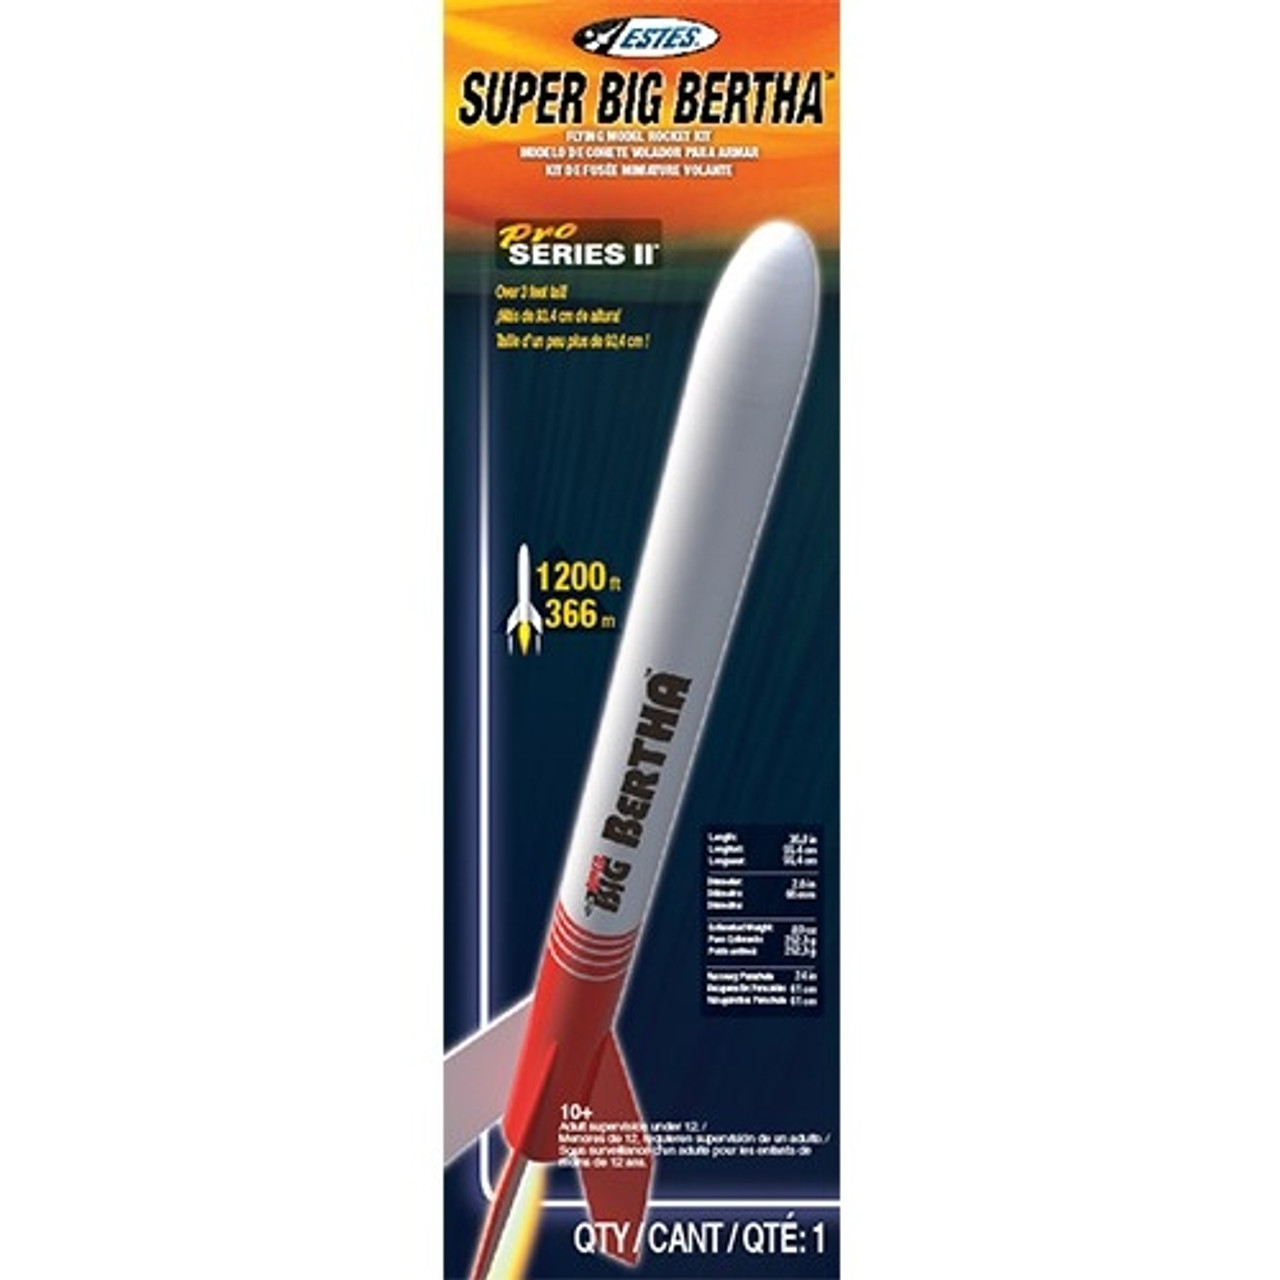 Estes Super Big Bertha Model Rocket Kit, Pro Series II